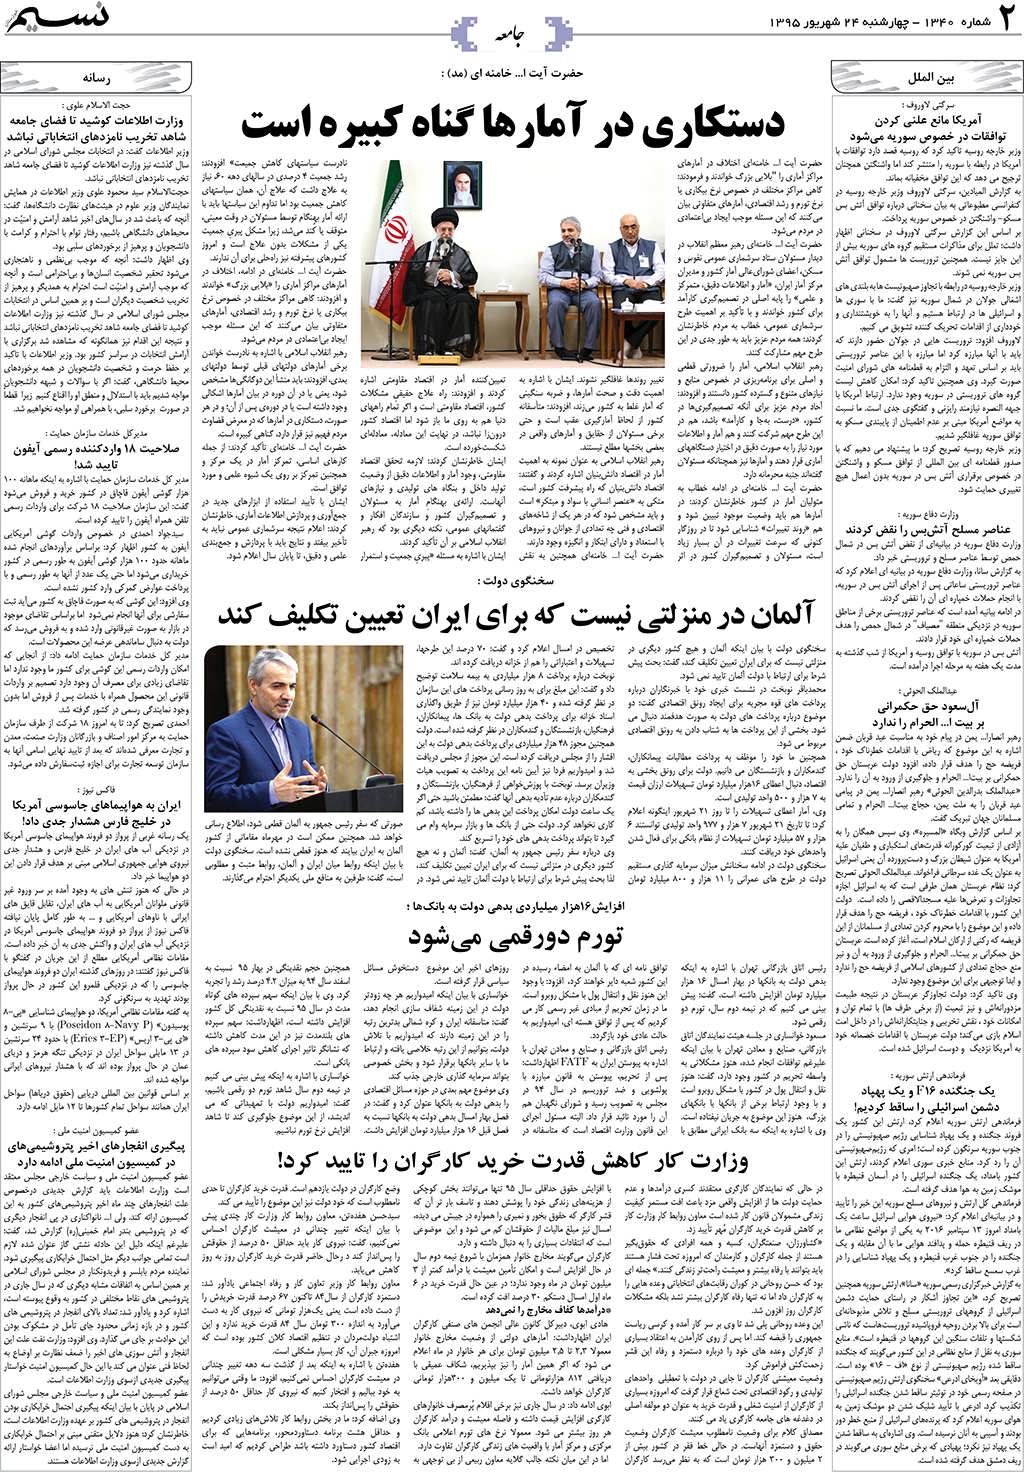 صفحه جامعه روزنامه نسیم شماره 1340